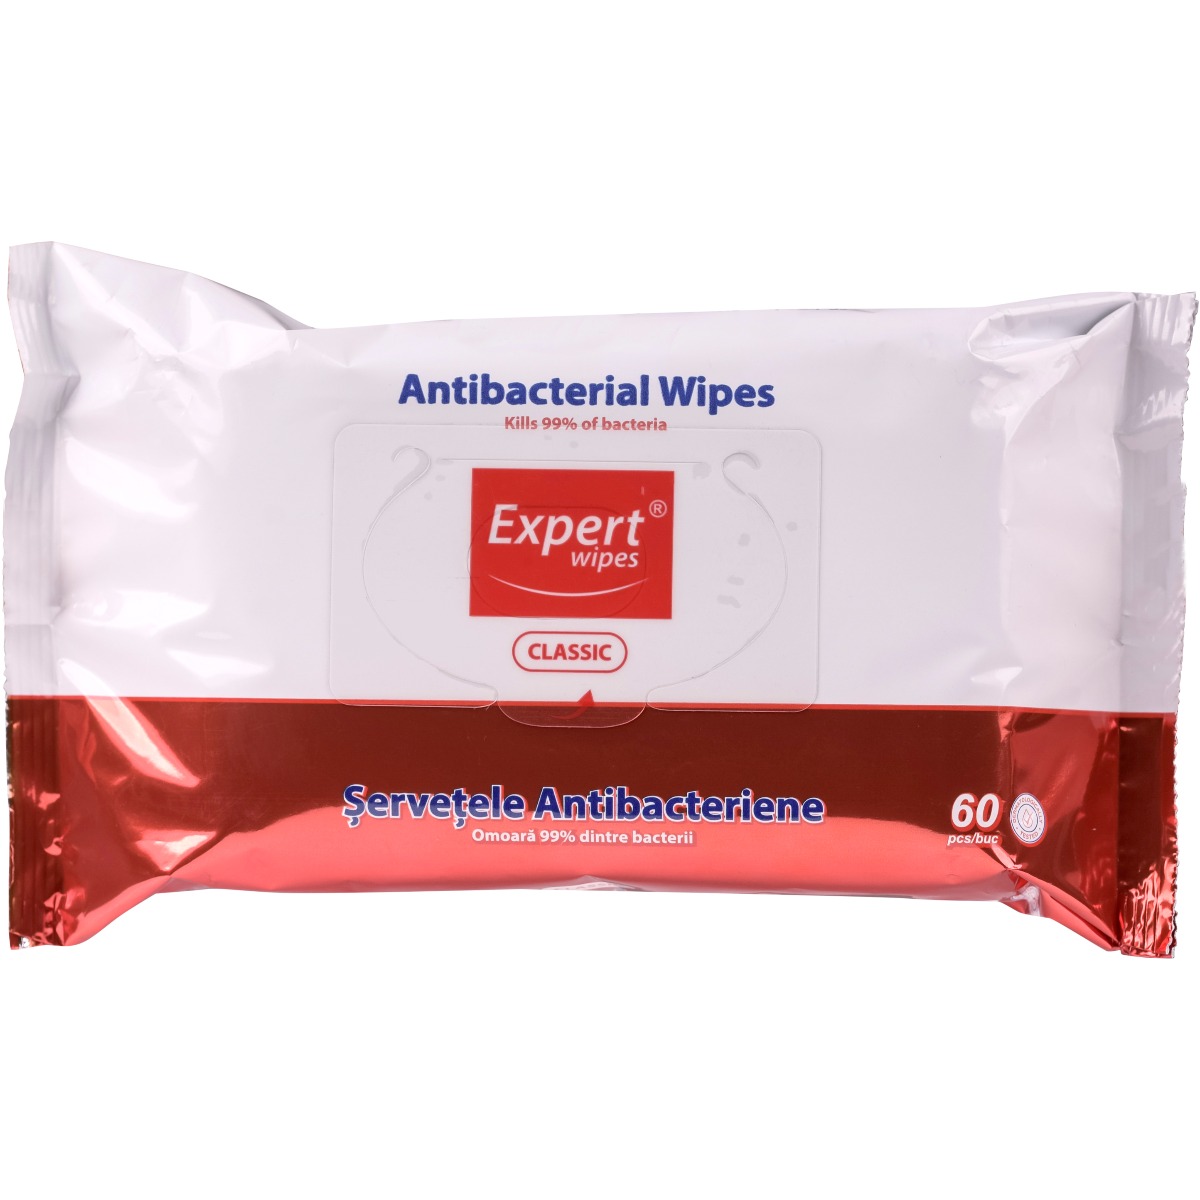 Servetele antibacteriene Expert Wipes Clasic, 60 buc antibacteriene imagine 2022 protejamcopilaria.ro